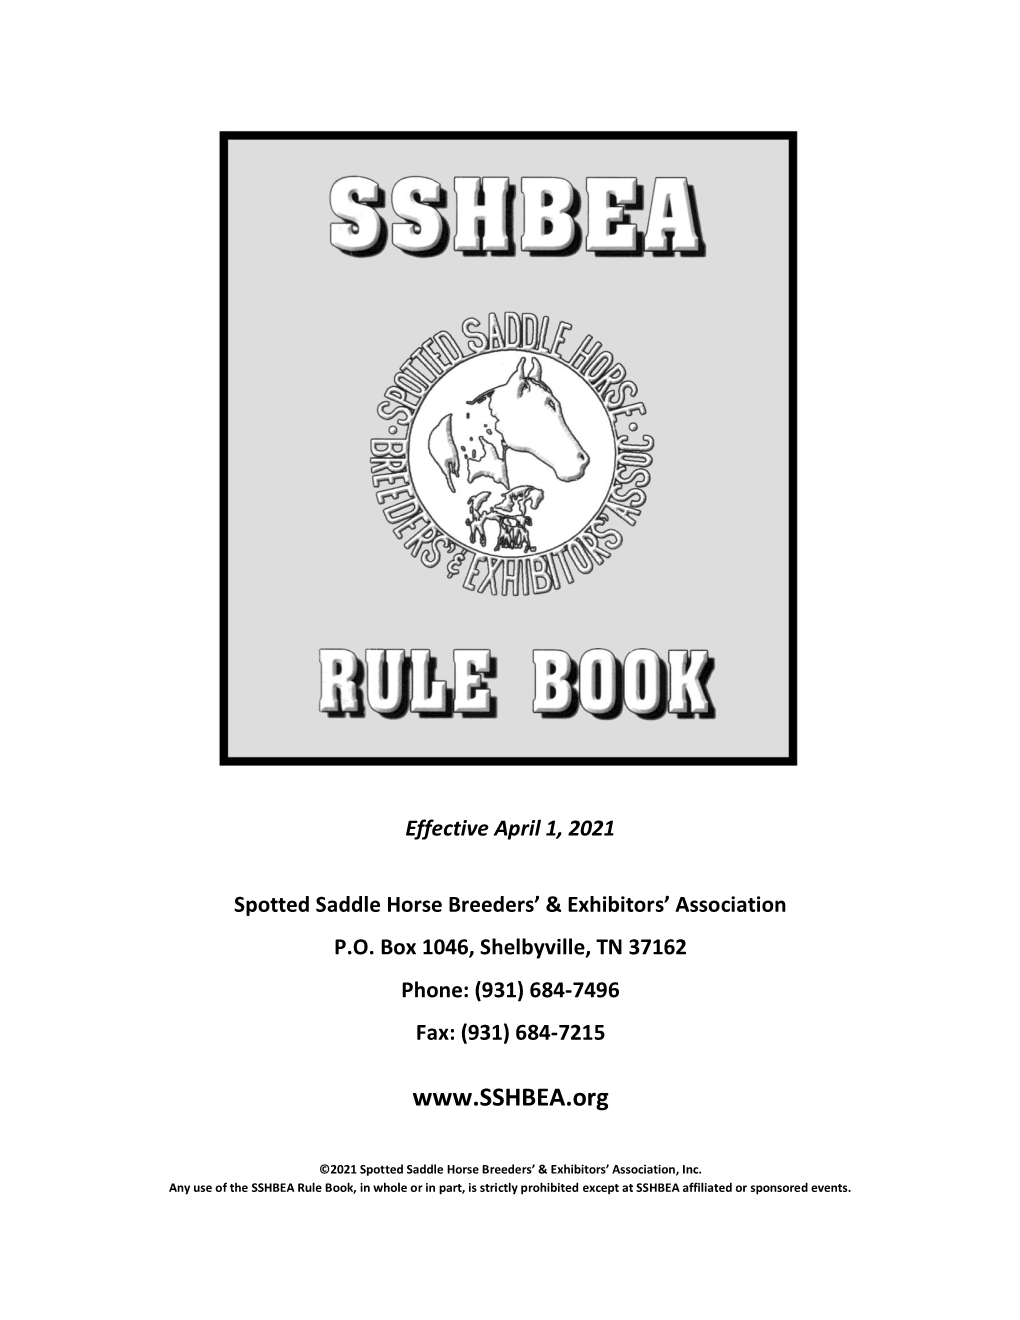 SSHBEA Rule Book 2021